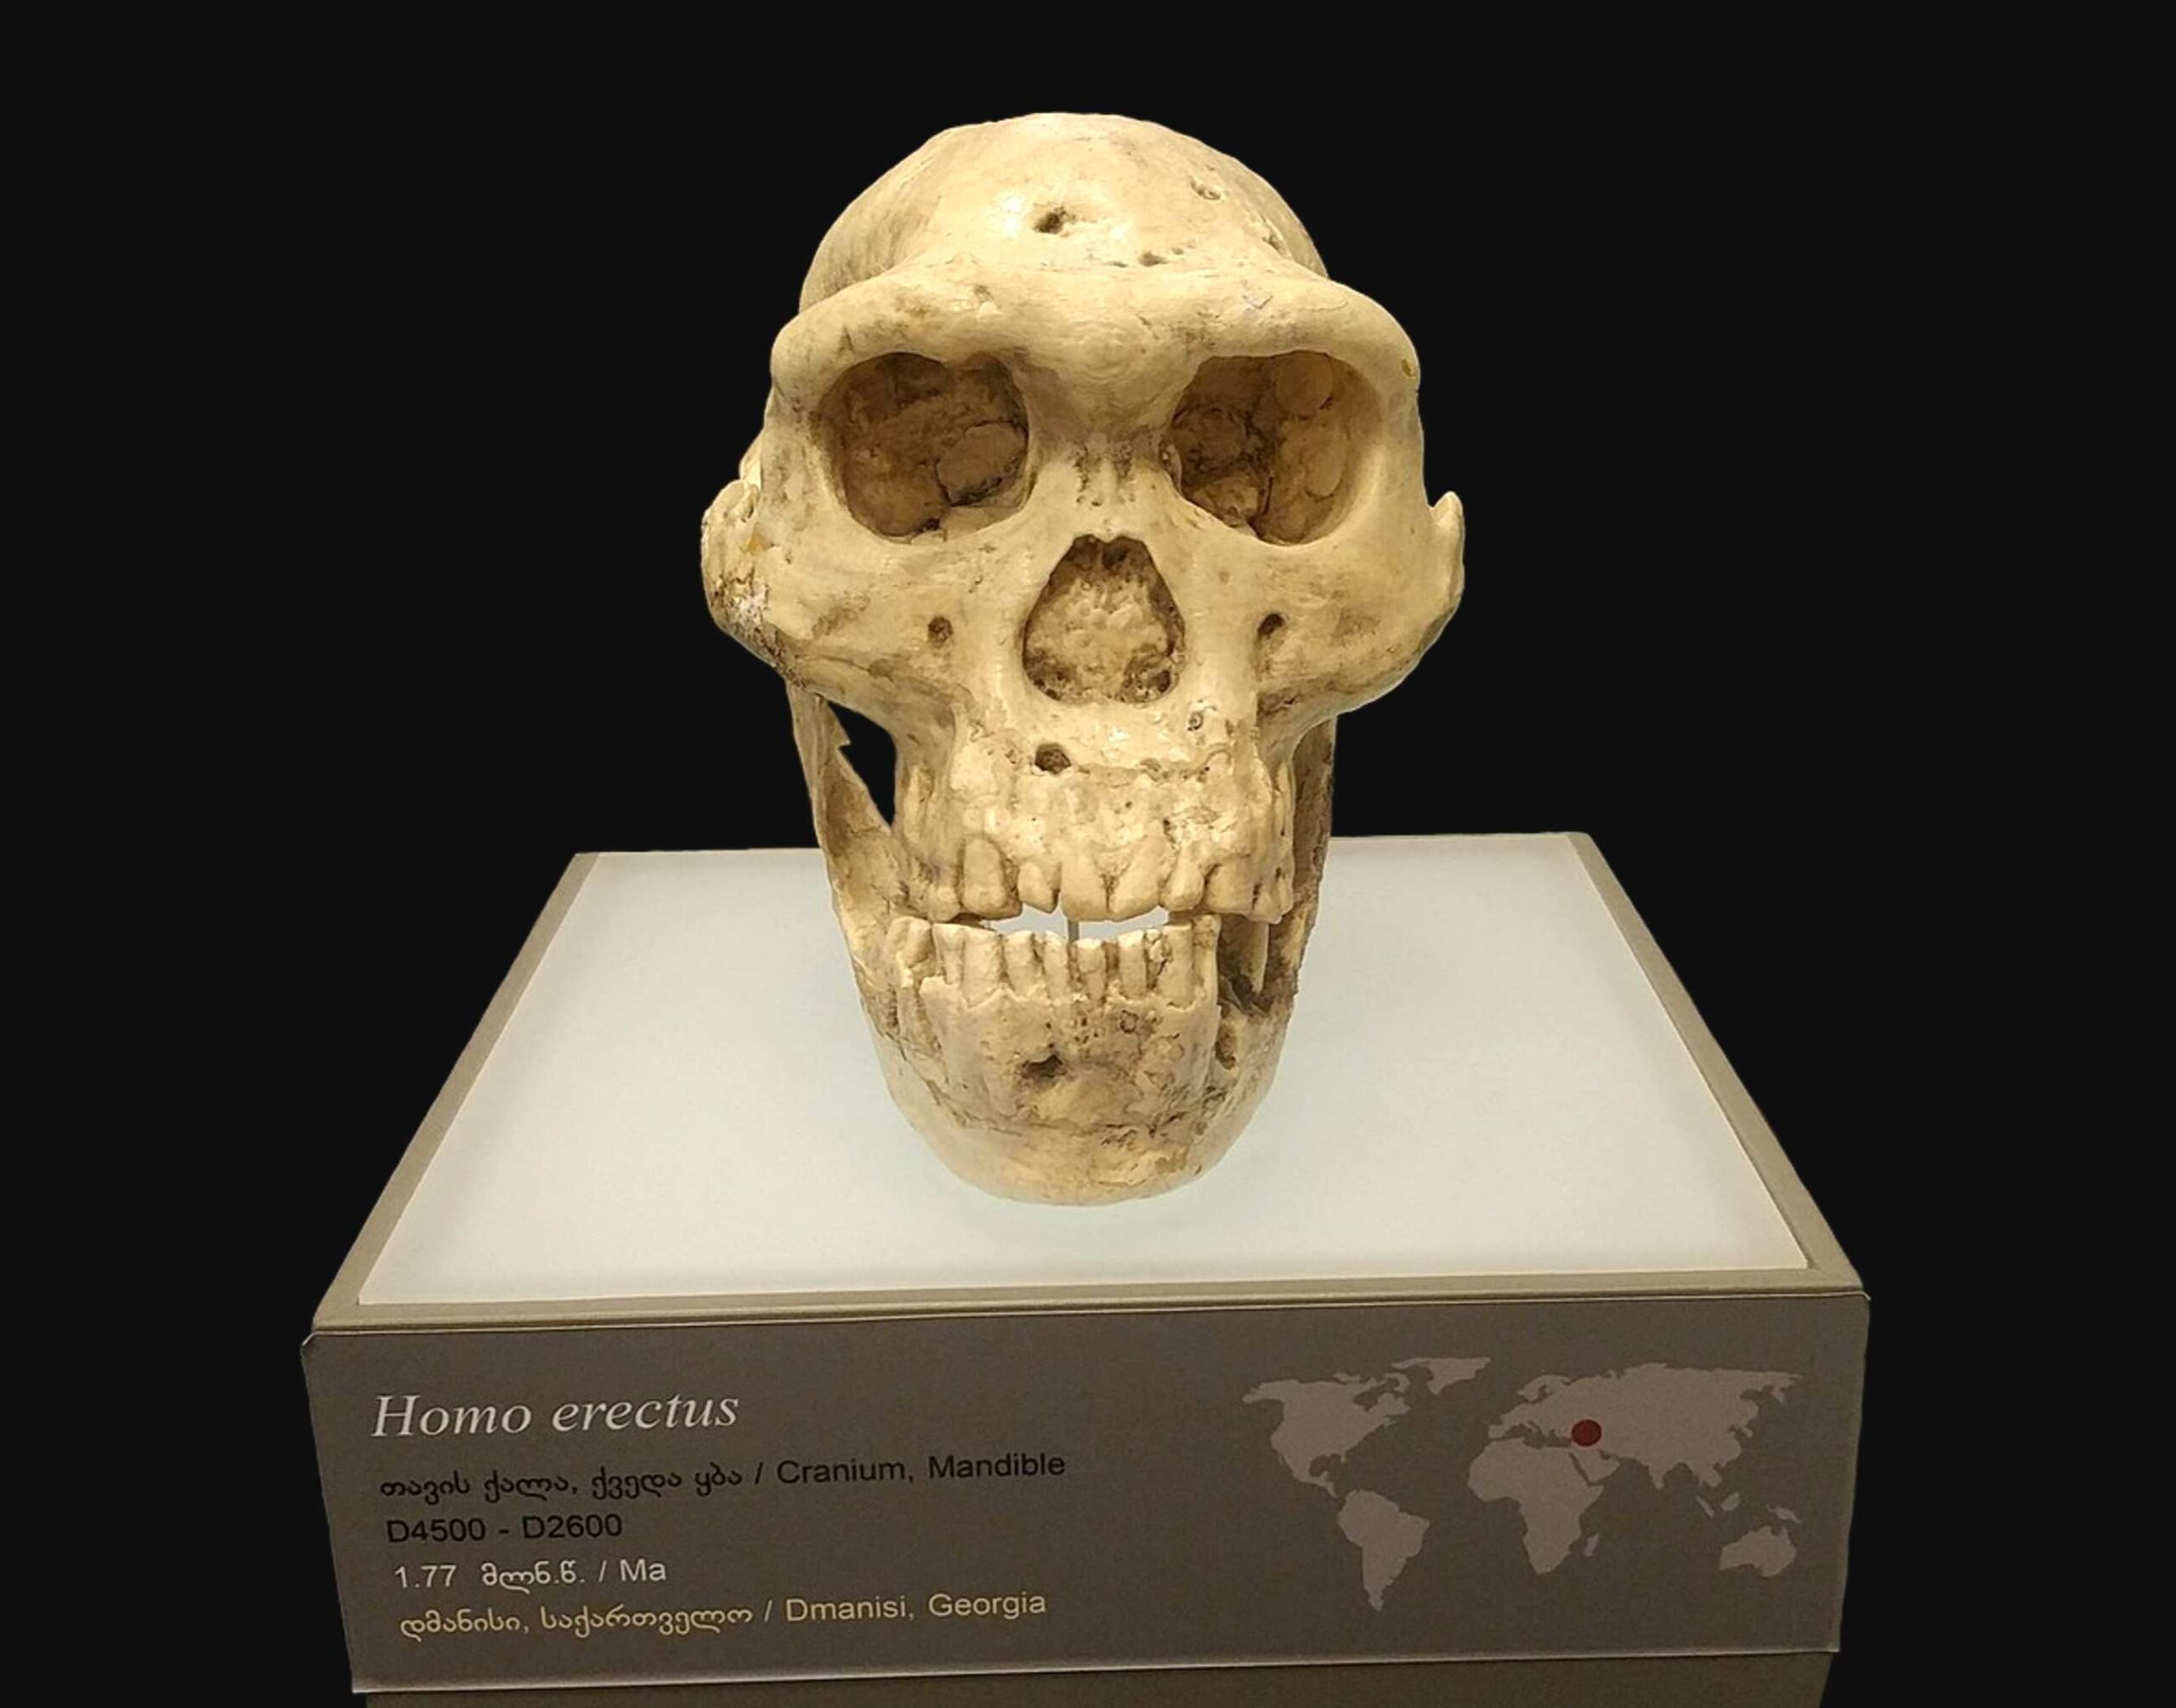 5 kaukolė - milijonas metų senumo žmogaus kaukolė privertė mokslininkus permąstyti ankstyvą žmogaus evoliuciją 2